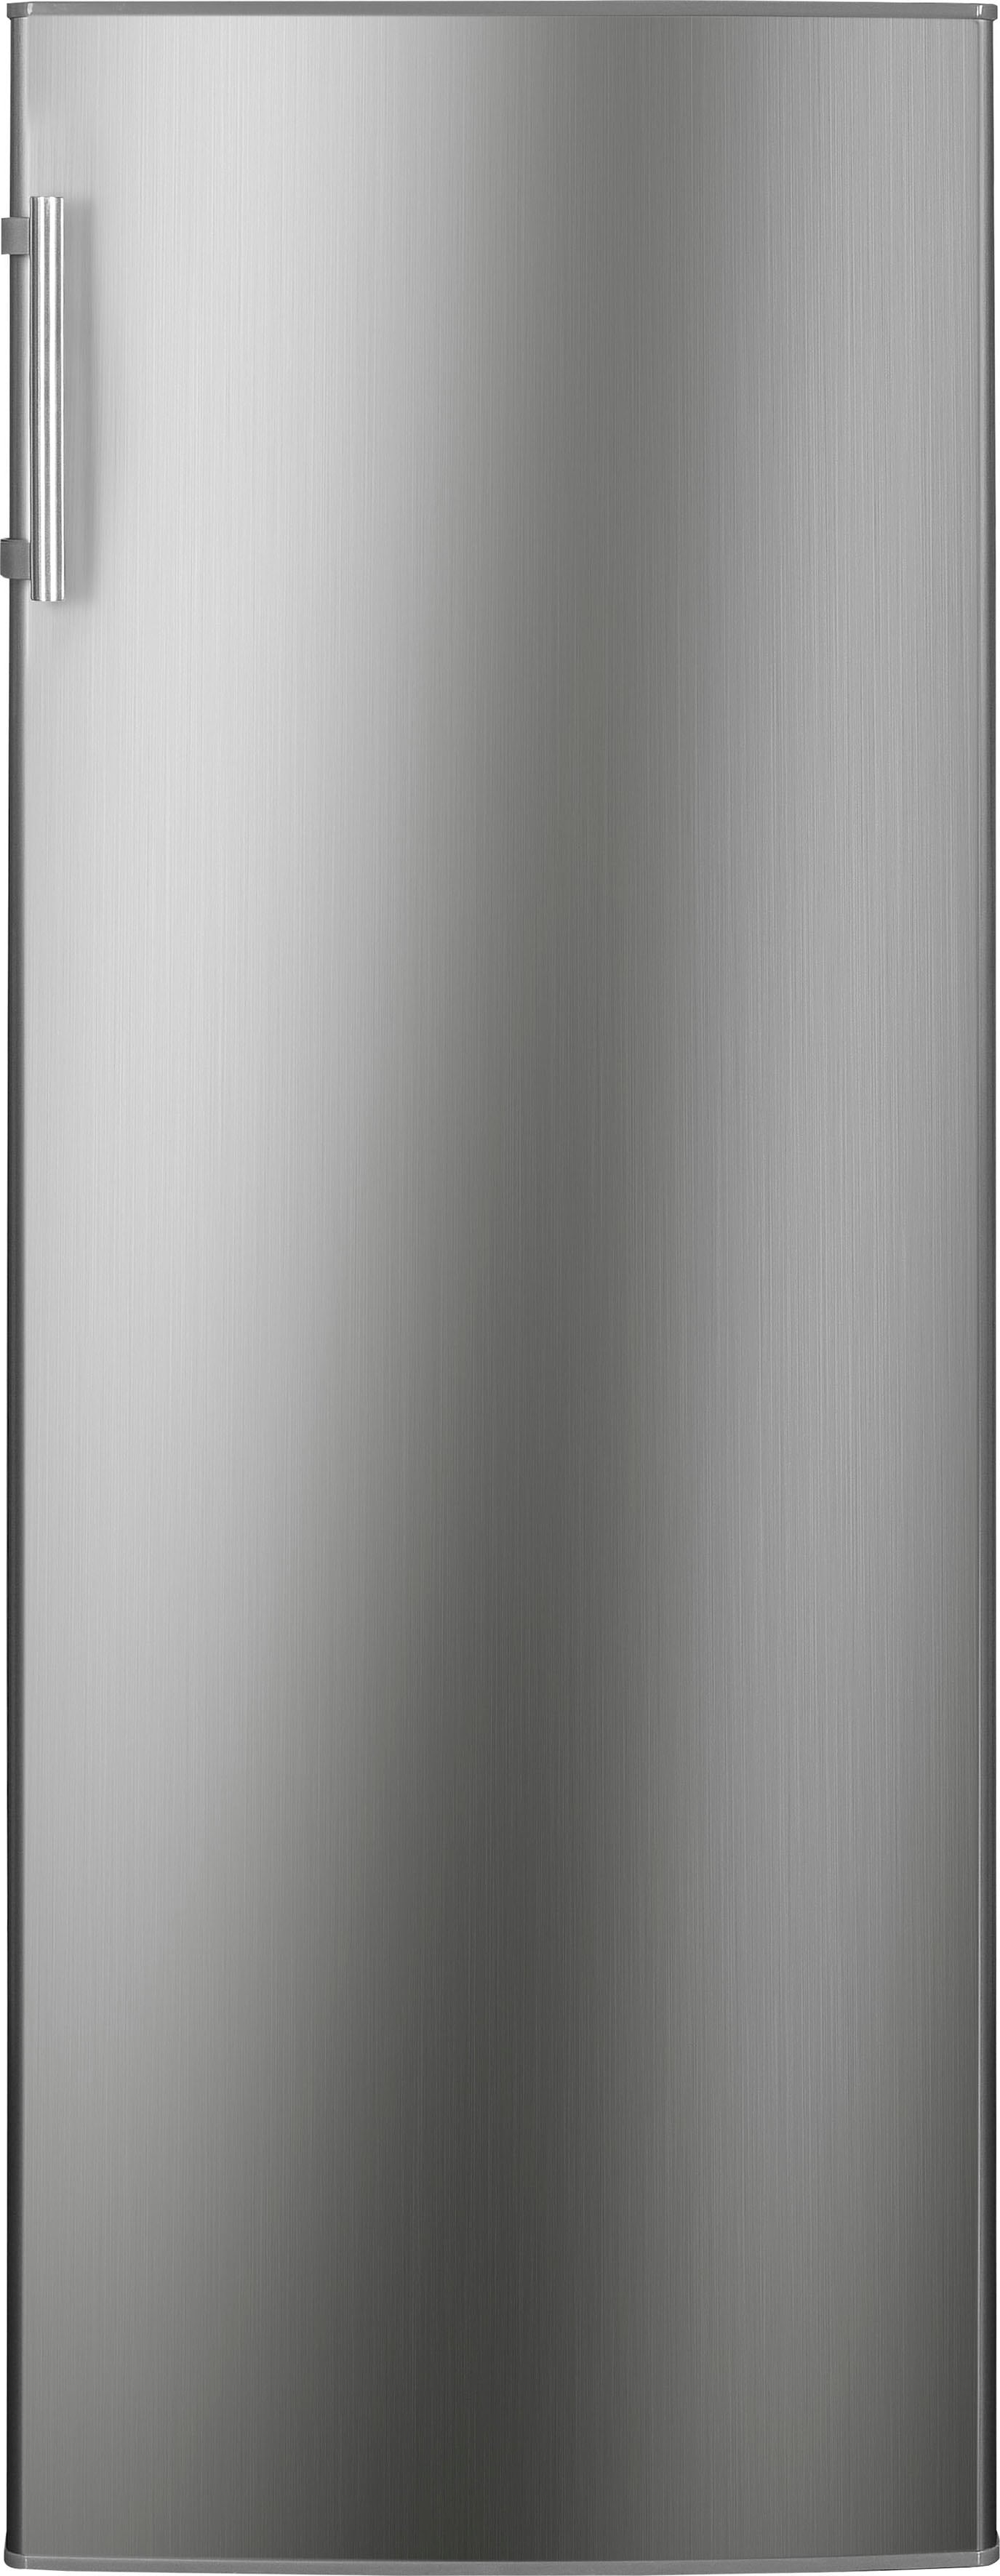 Hanseatic Kühlschrank, HKS14355EI, 142,6 cm hoch, 54,4 cm breit 2